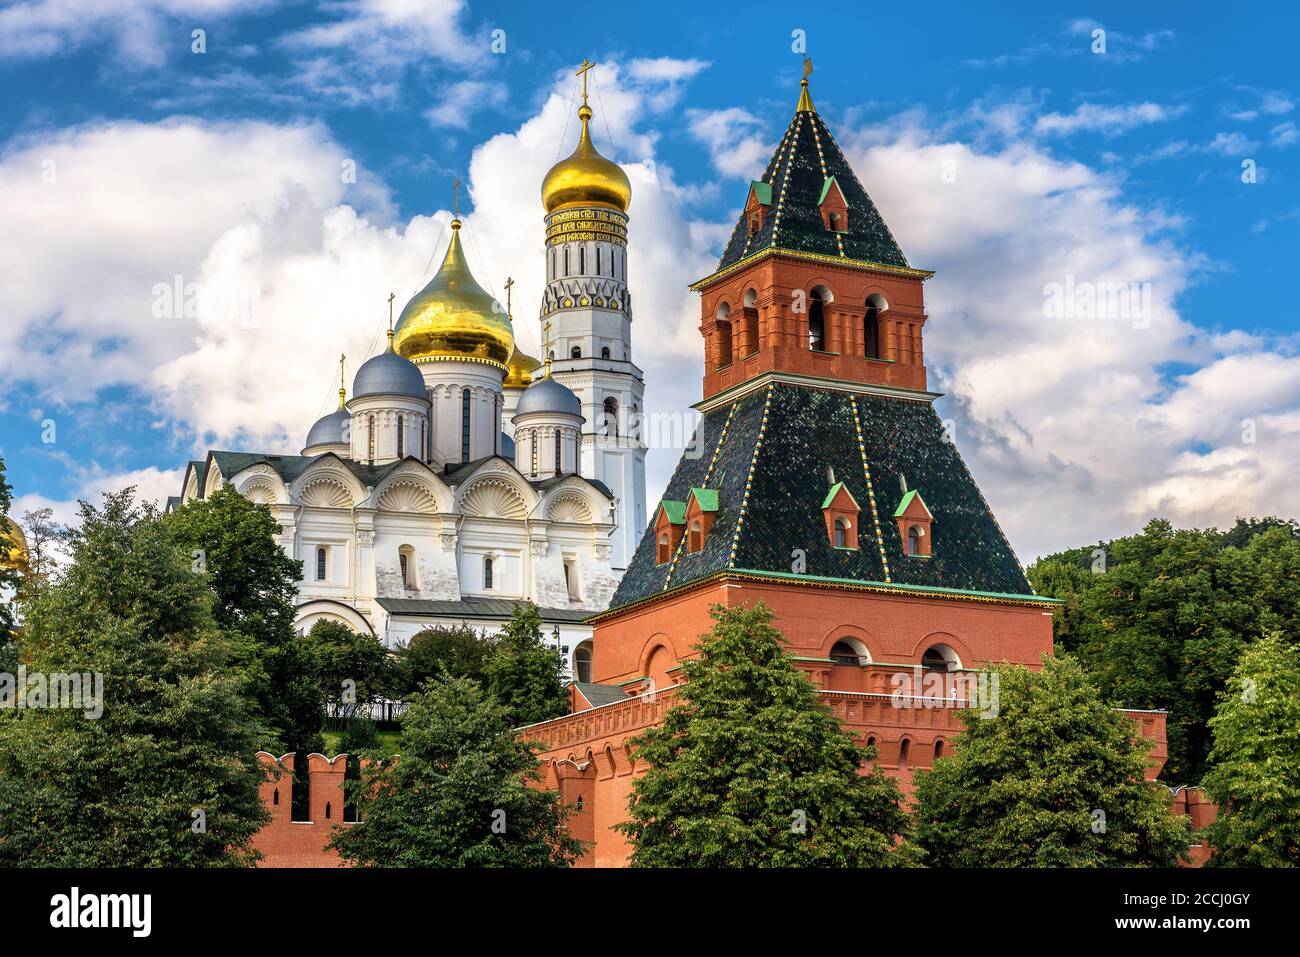 Primo piano del Cremlino di Mosca in estate, la Russia. E' la principale attrazione turistica di Mosca. Vecchia torre del famoso Cremlino di Mosca e antica cattedrale alle sue spalle. Foto Stock